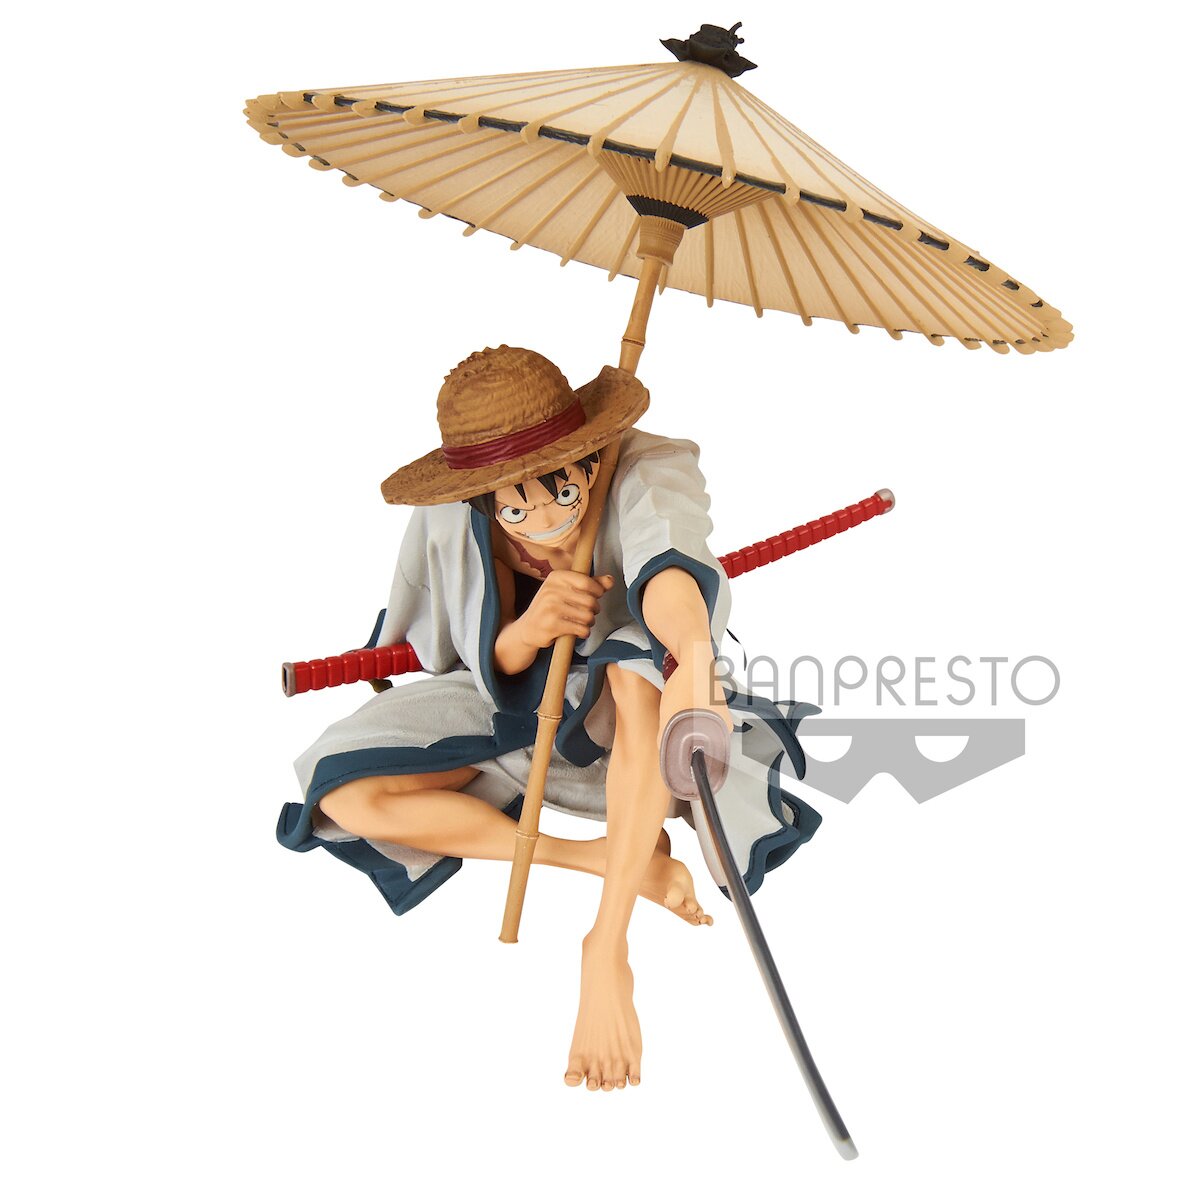 One Piece - World Figure Colosseum - Zoukeiou Choujou Kessen 2 vol